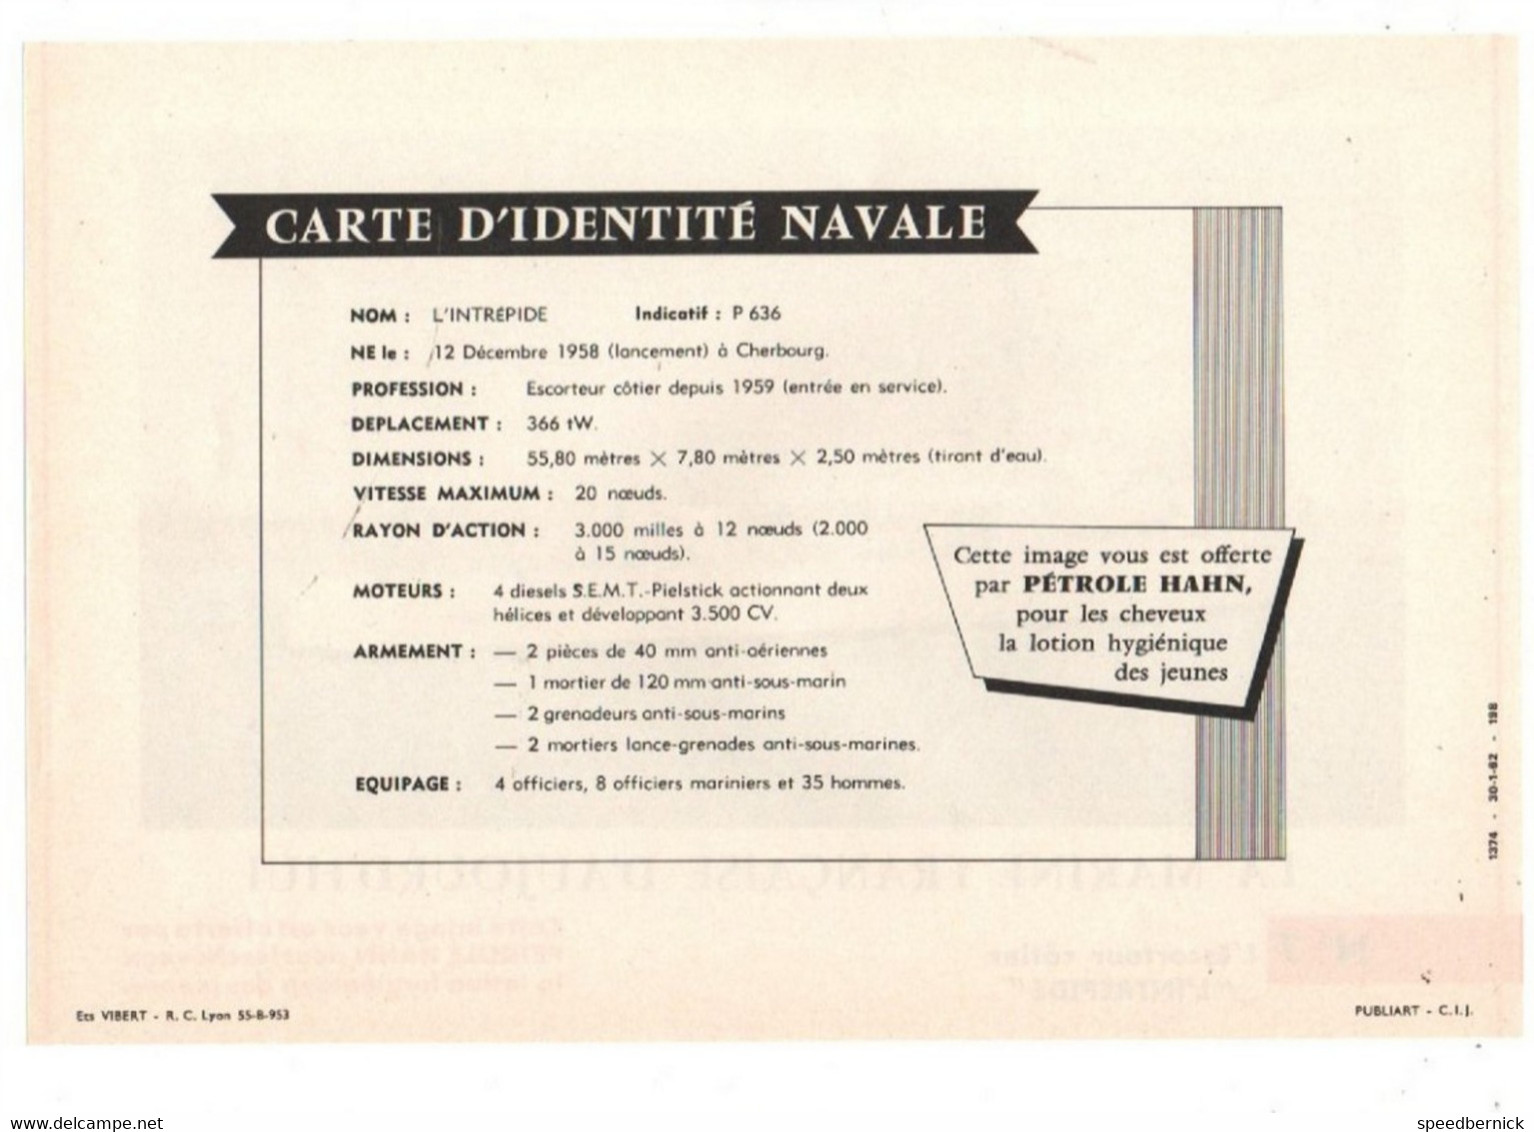 LA MARINE FRANCAISE AUJOURD'HUI N° 7 Escorteur Côtier L'INTREPIDE -Publicité Pétrole Hahn -1962 - Barcos